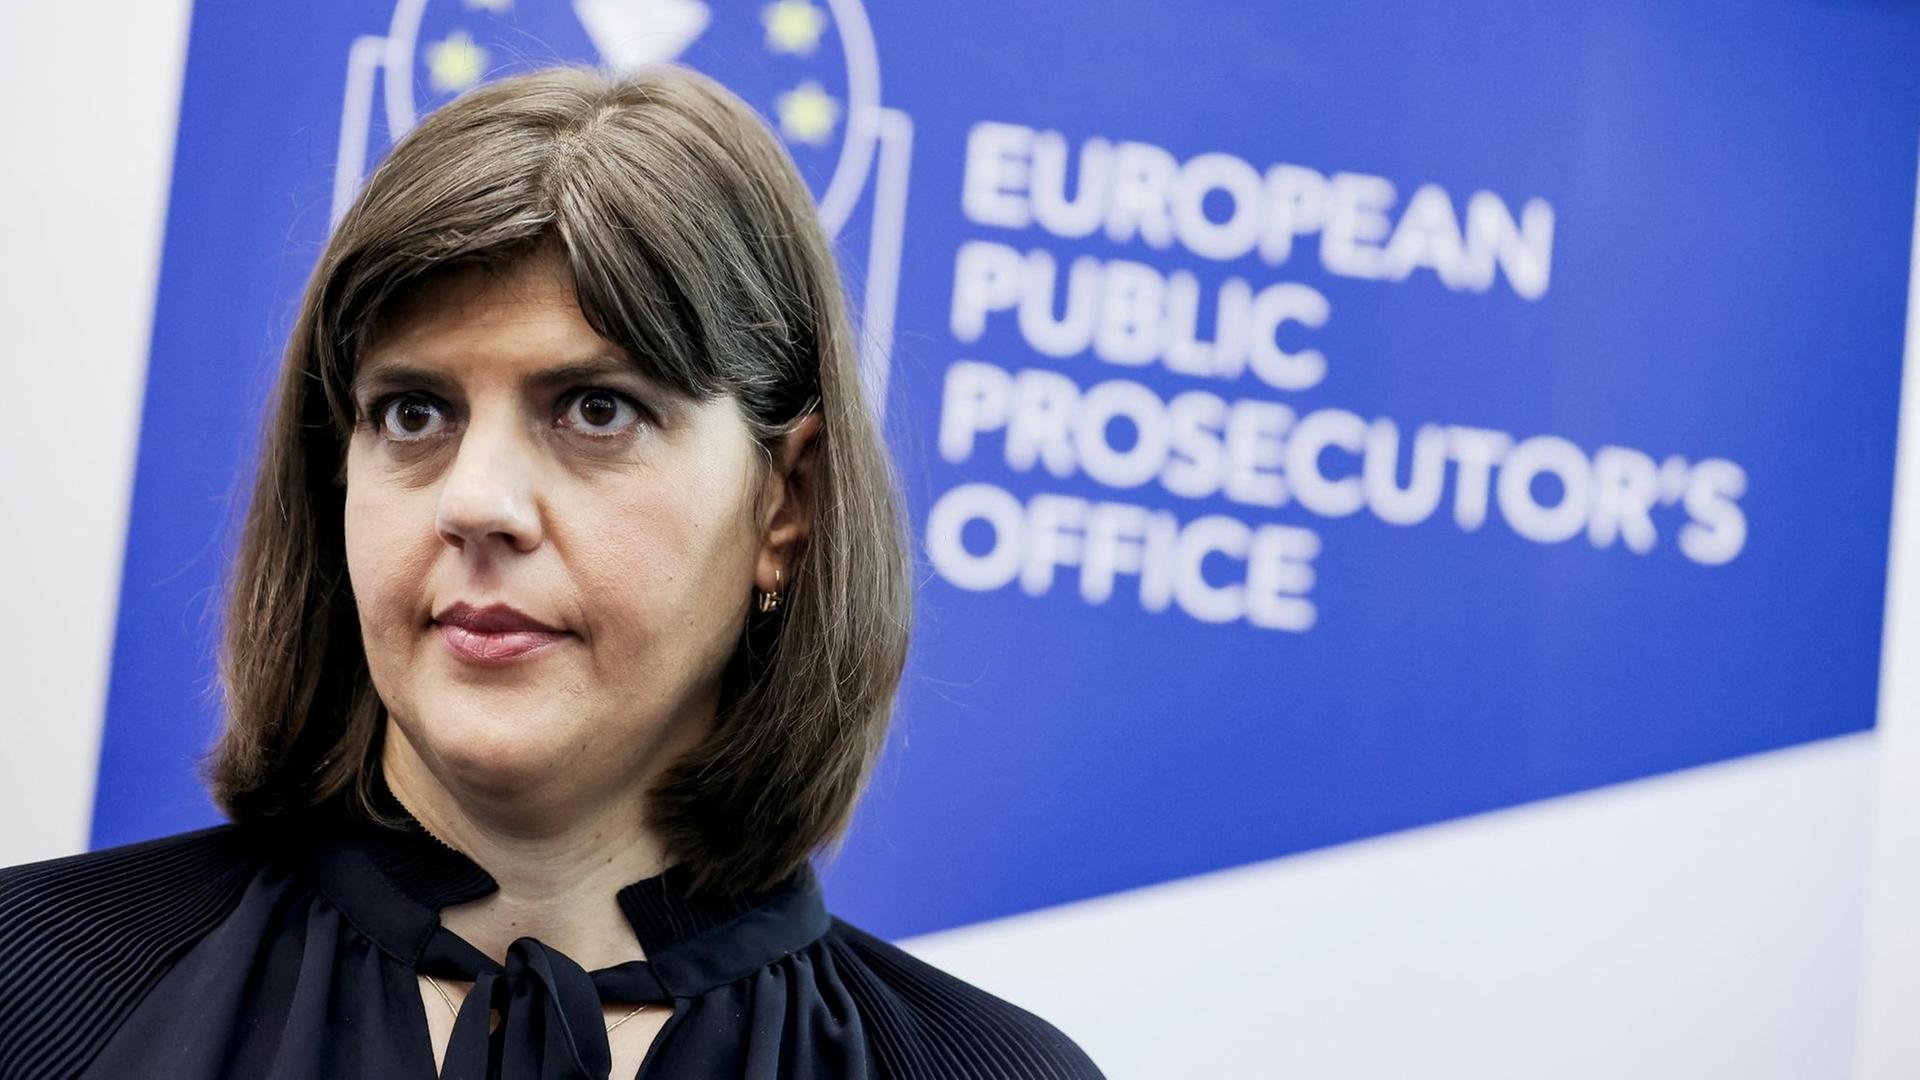 Die neue Europäische Staatsanwaltschaft wird von der früheren rumänischen Korruptionsbekämpferin Laura Codruța Kövesi geleitet. Hier bei der Pressekonferenz im neuen EPPO-Sitz in Luxemburg.